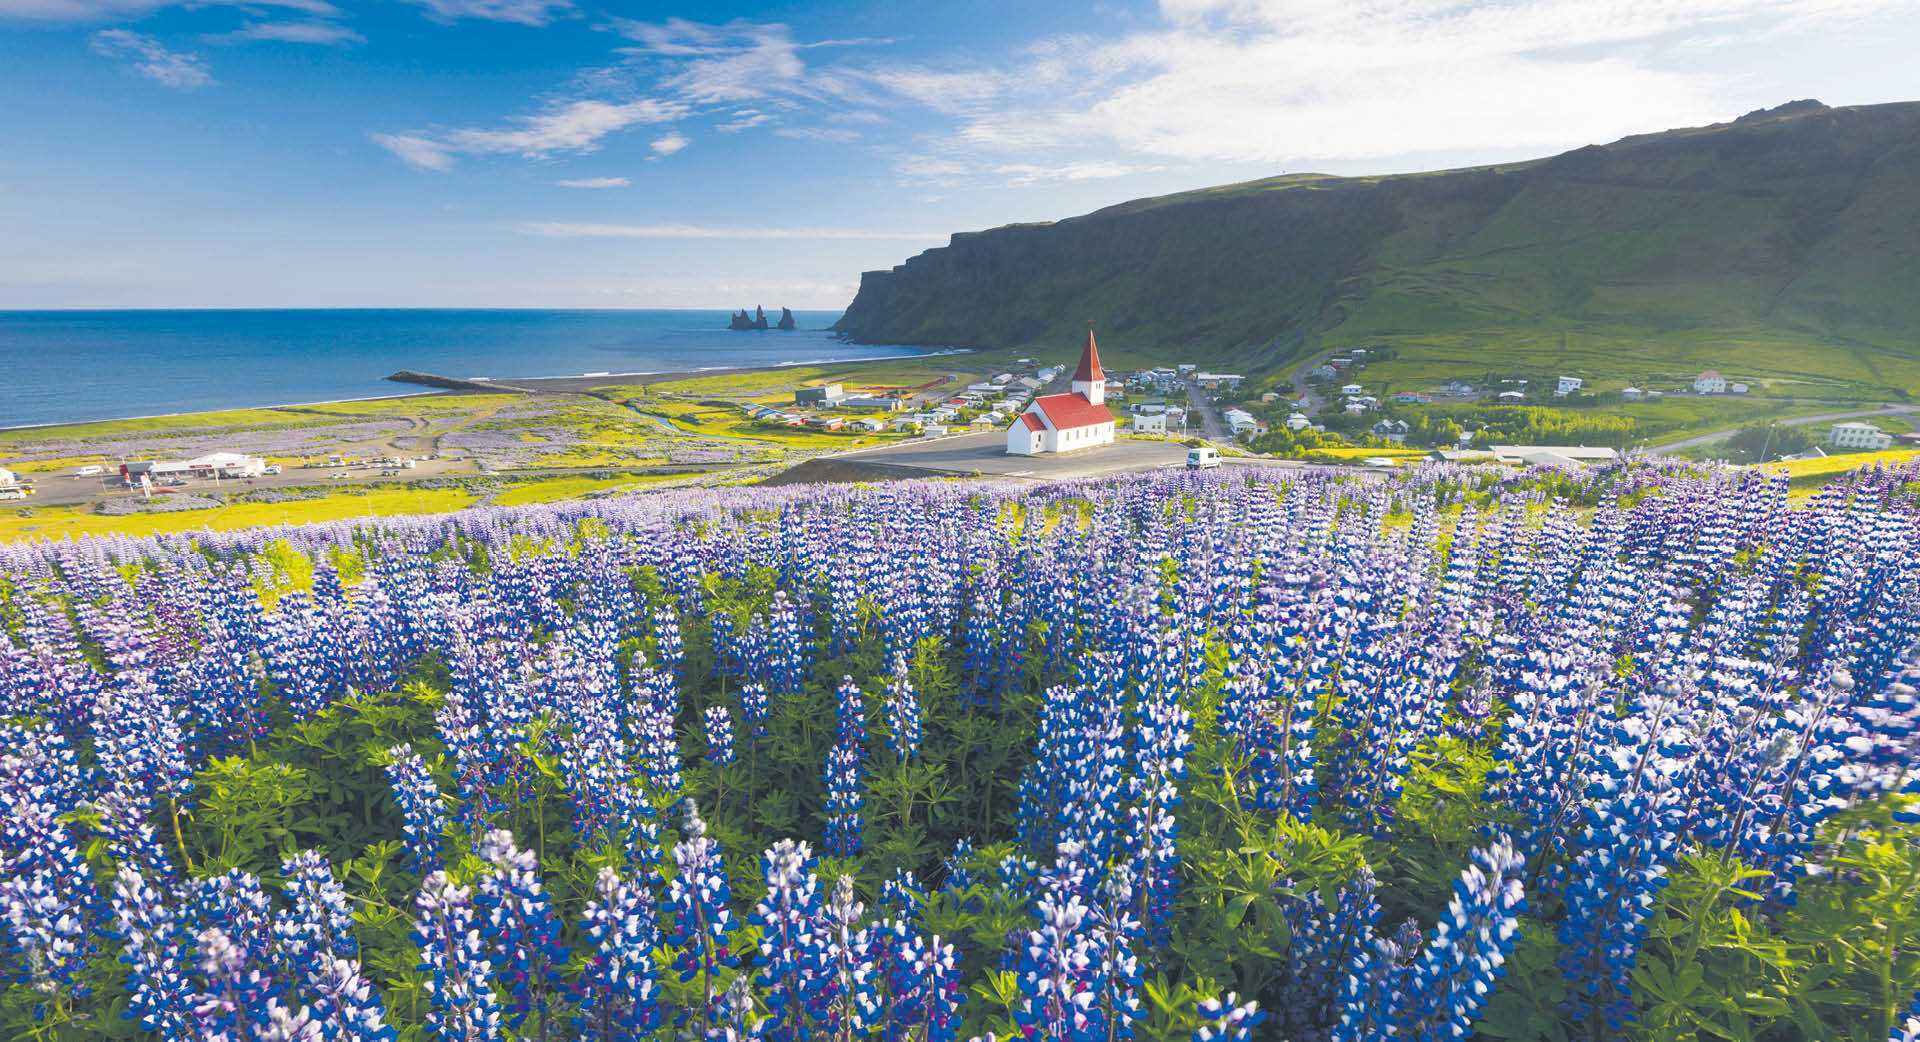 Wioska Vík na południowym wybrzeżu Islandii